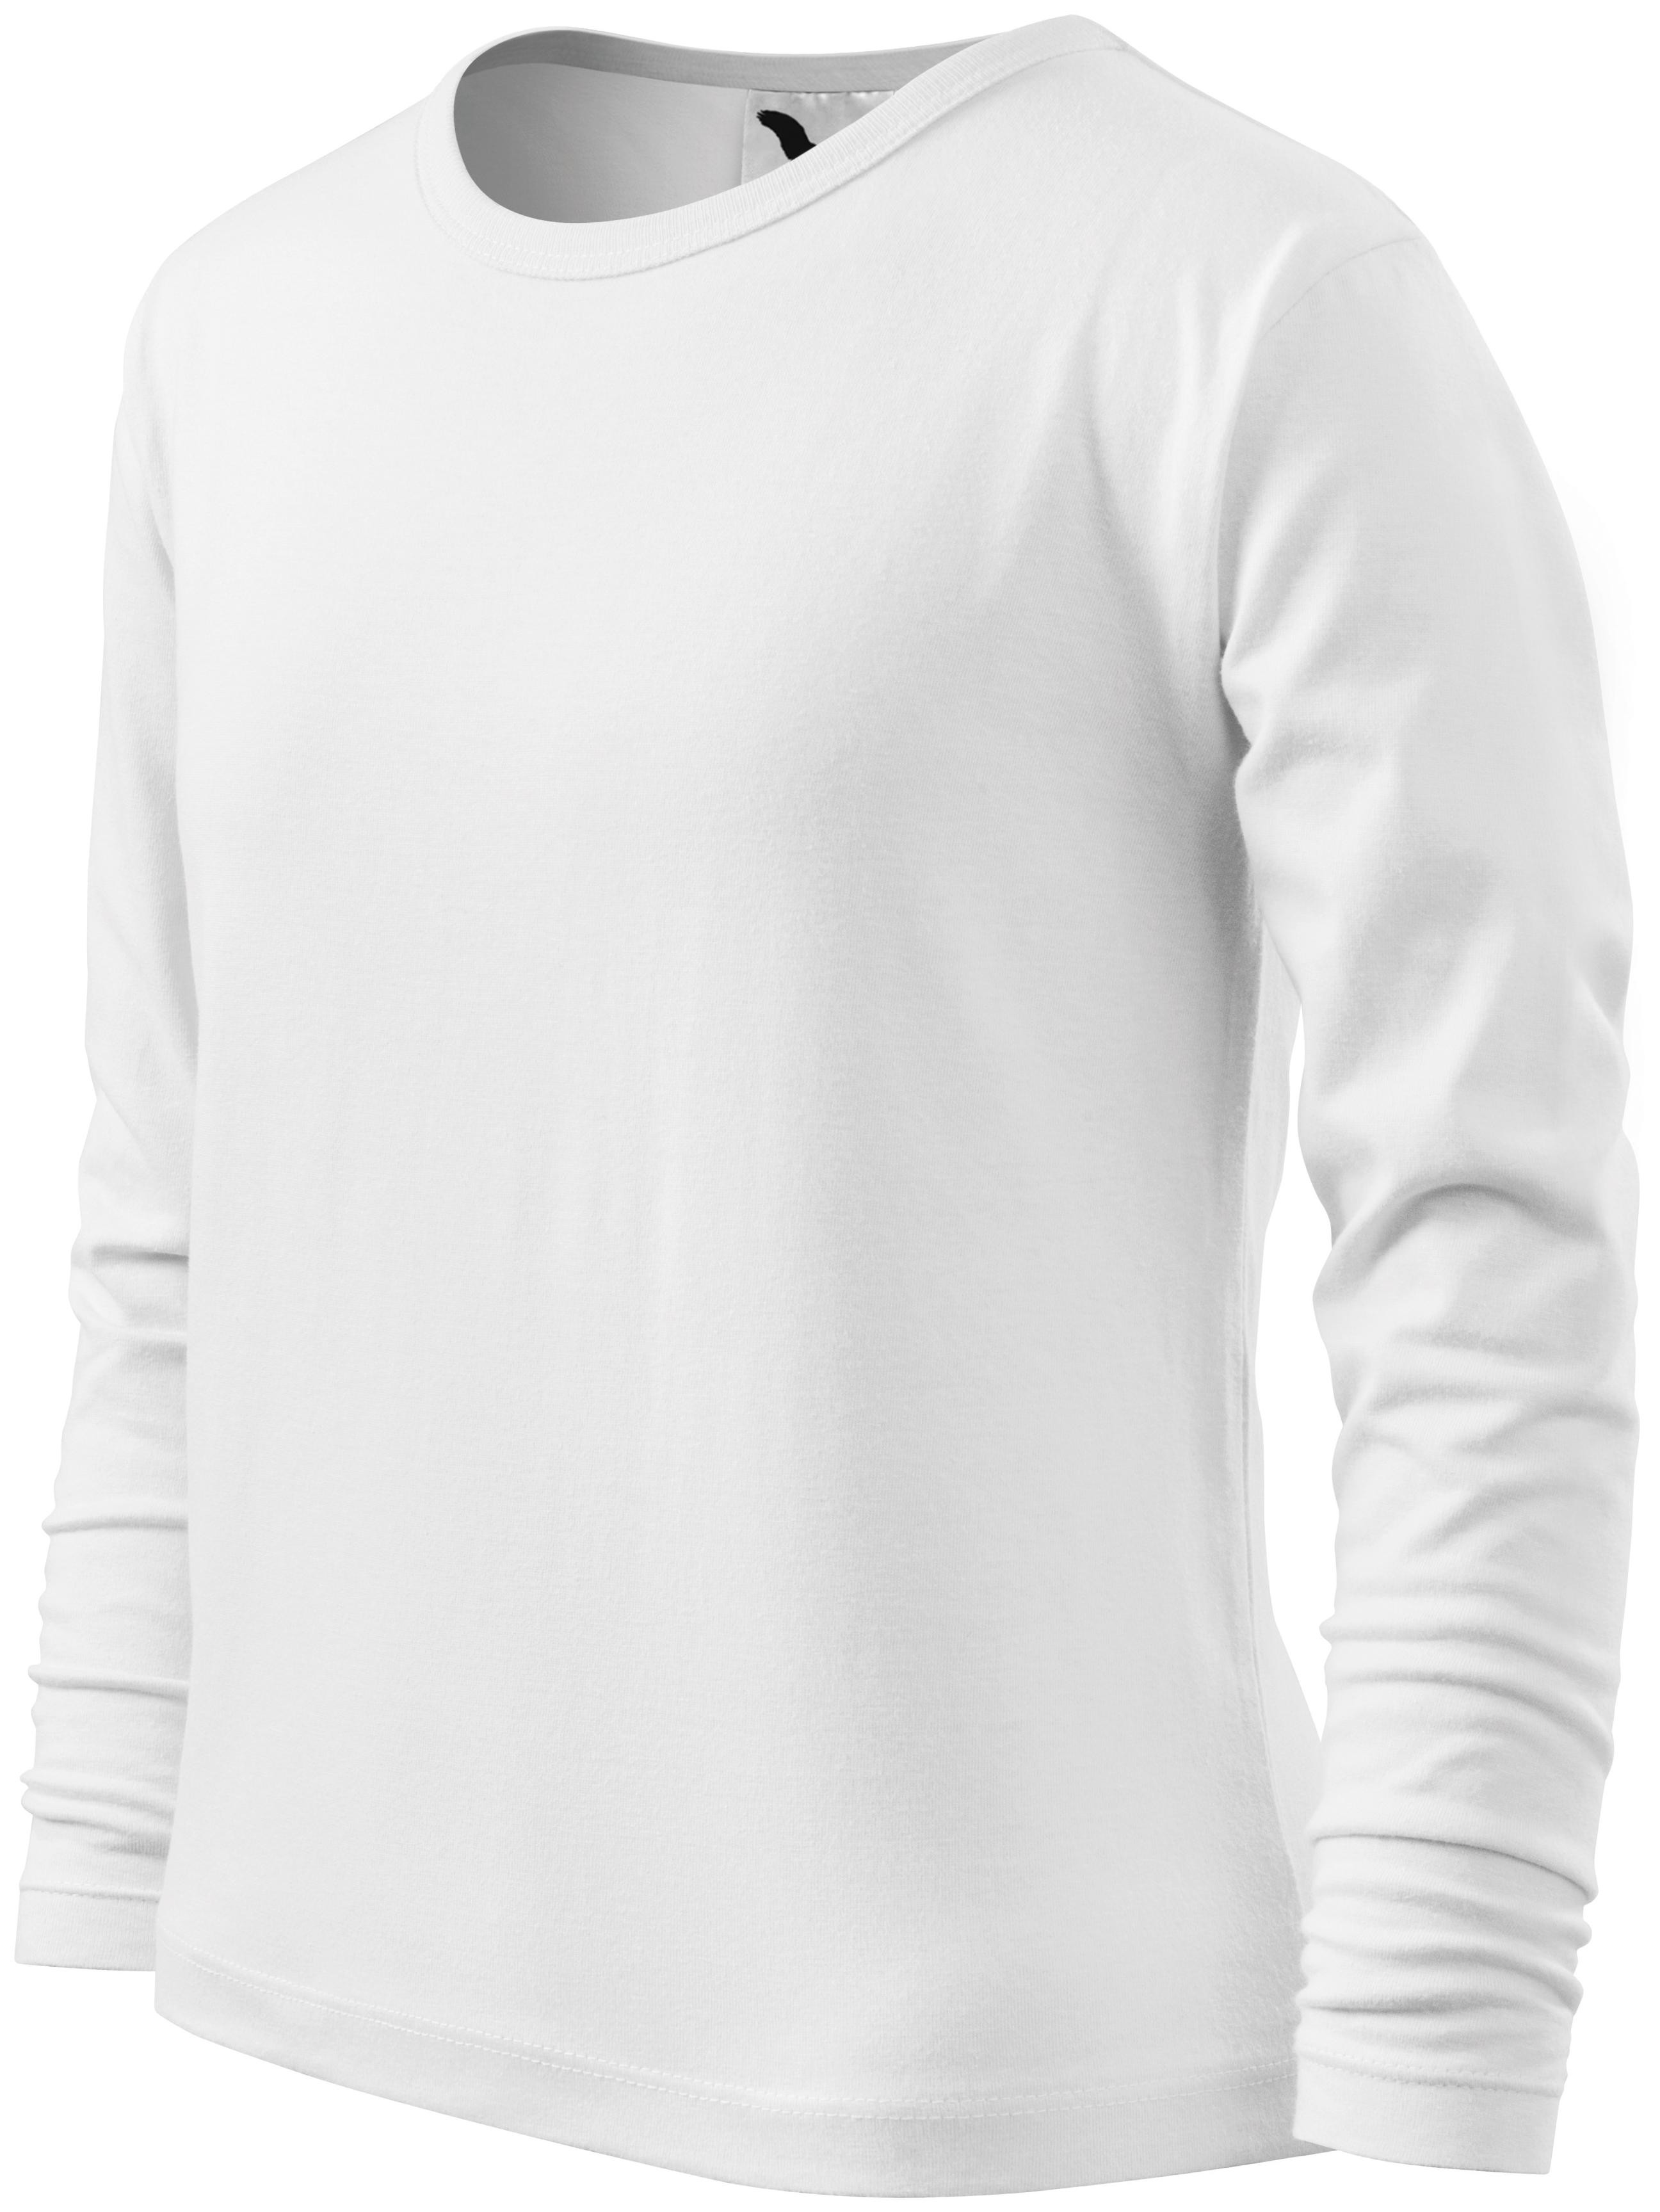 Detské tričko s dlhým rukávom, biela, 146cm / 10rokov